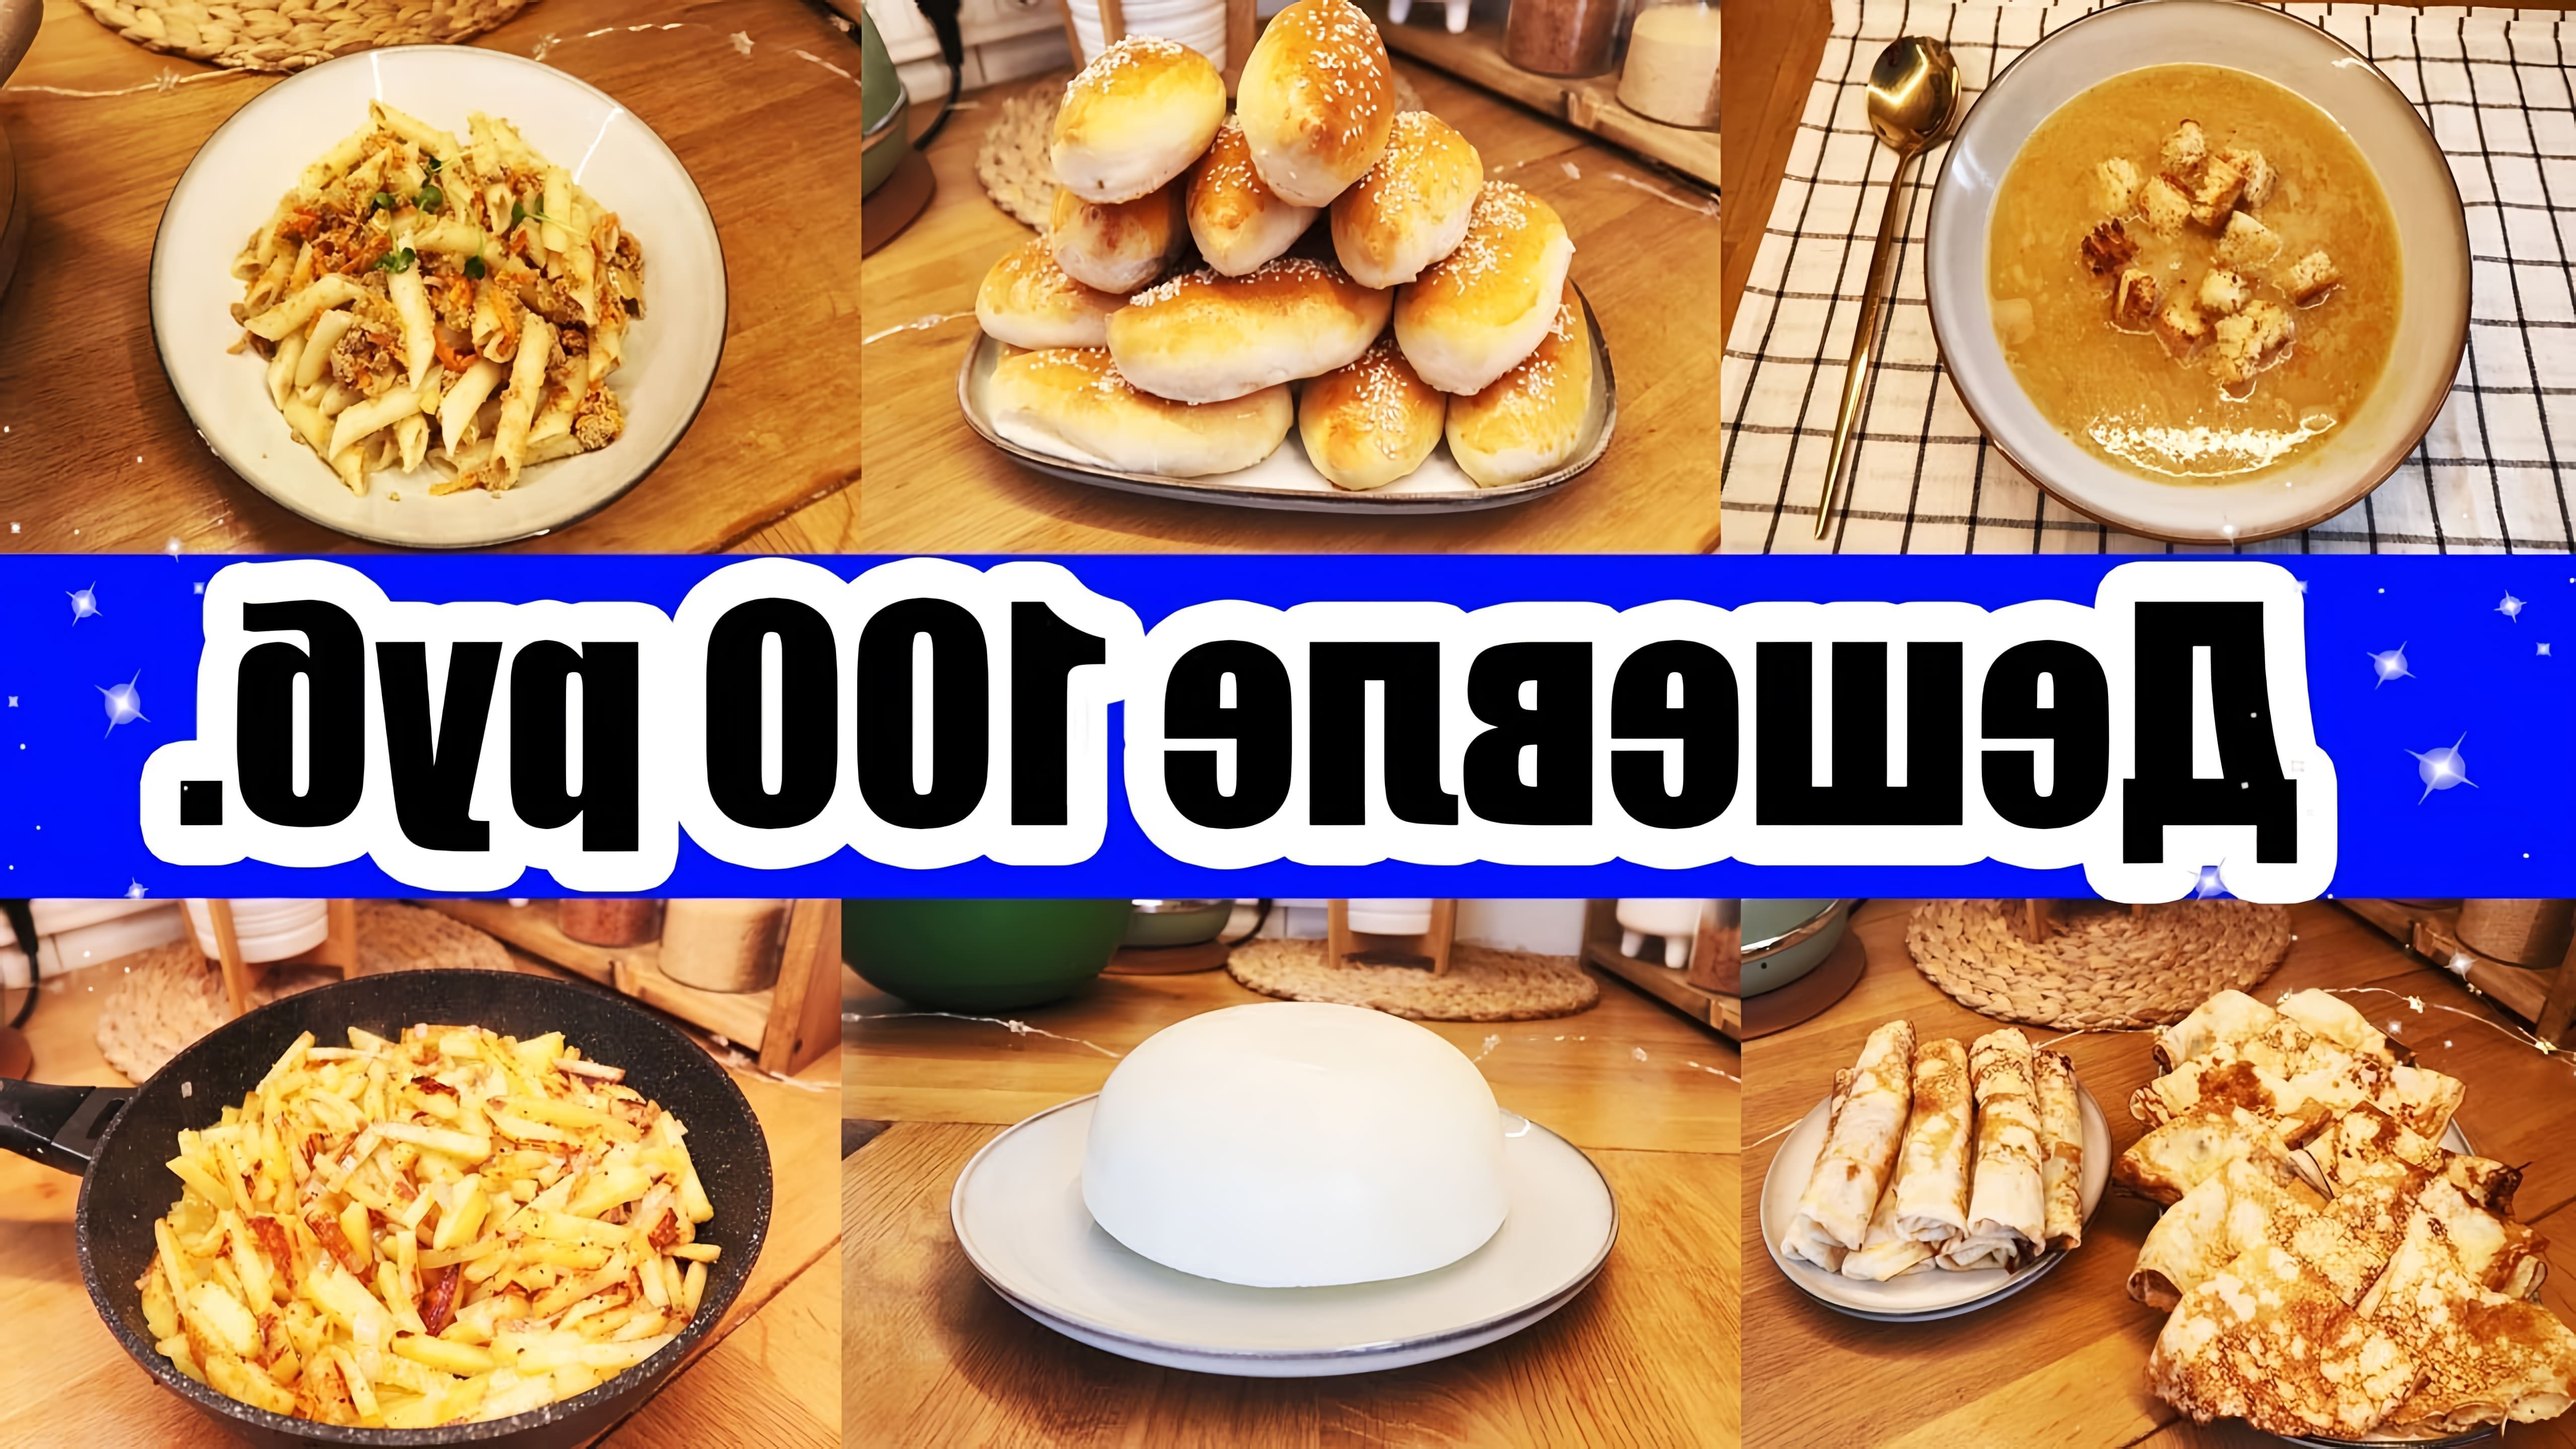 В этом видео автор предлагает рецепты пяти блюд, стоимость которых не превышает 100 рублей